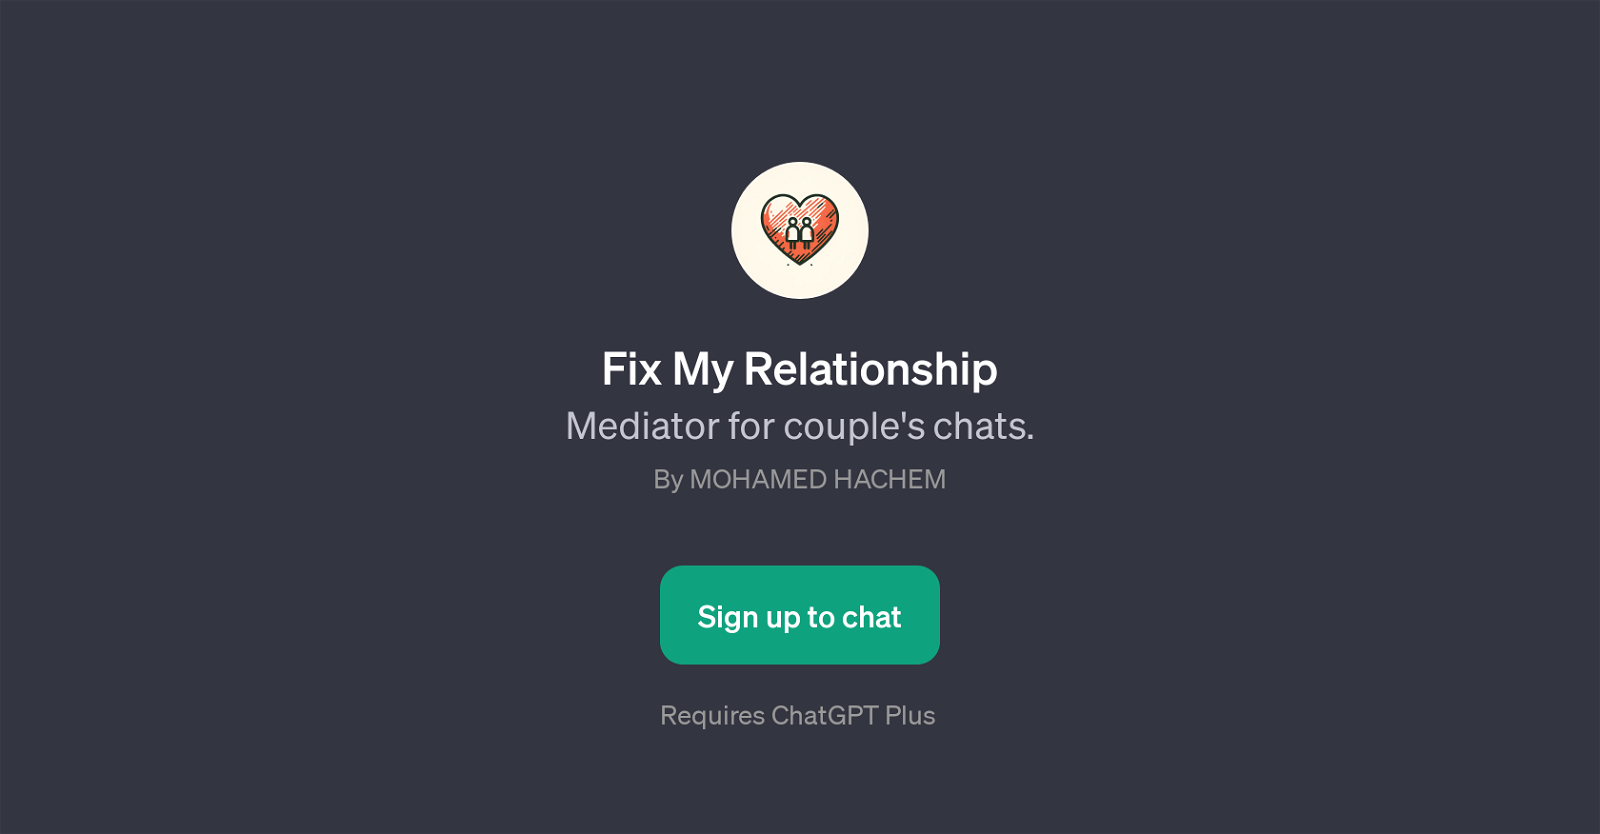 Fix My Relationship website